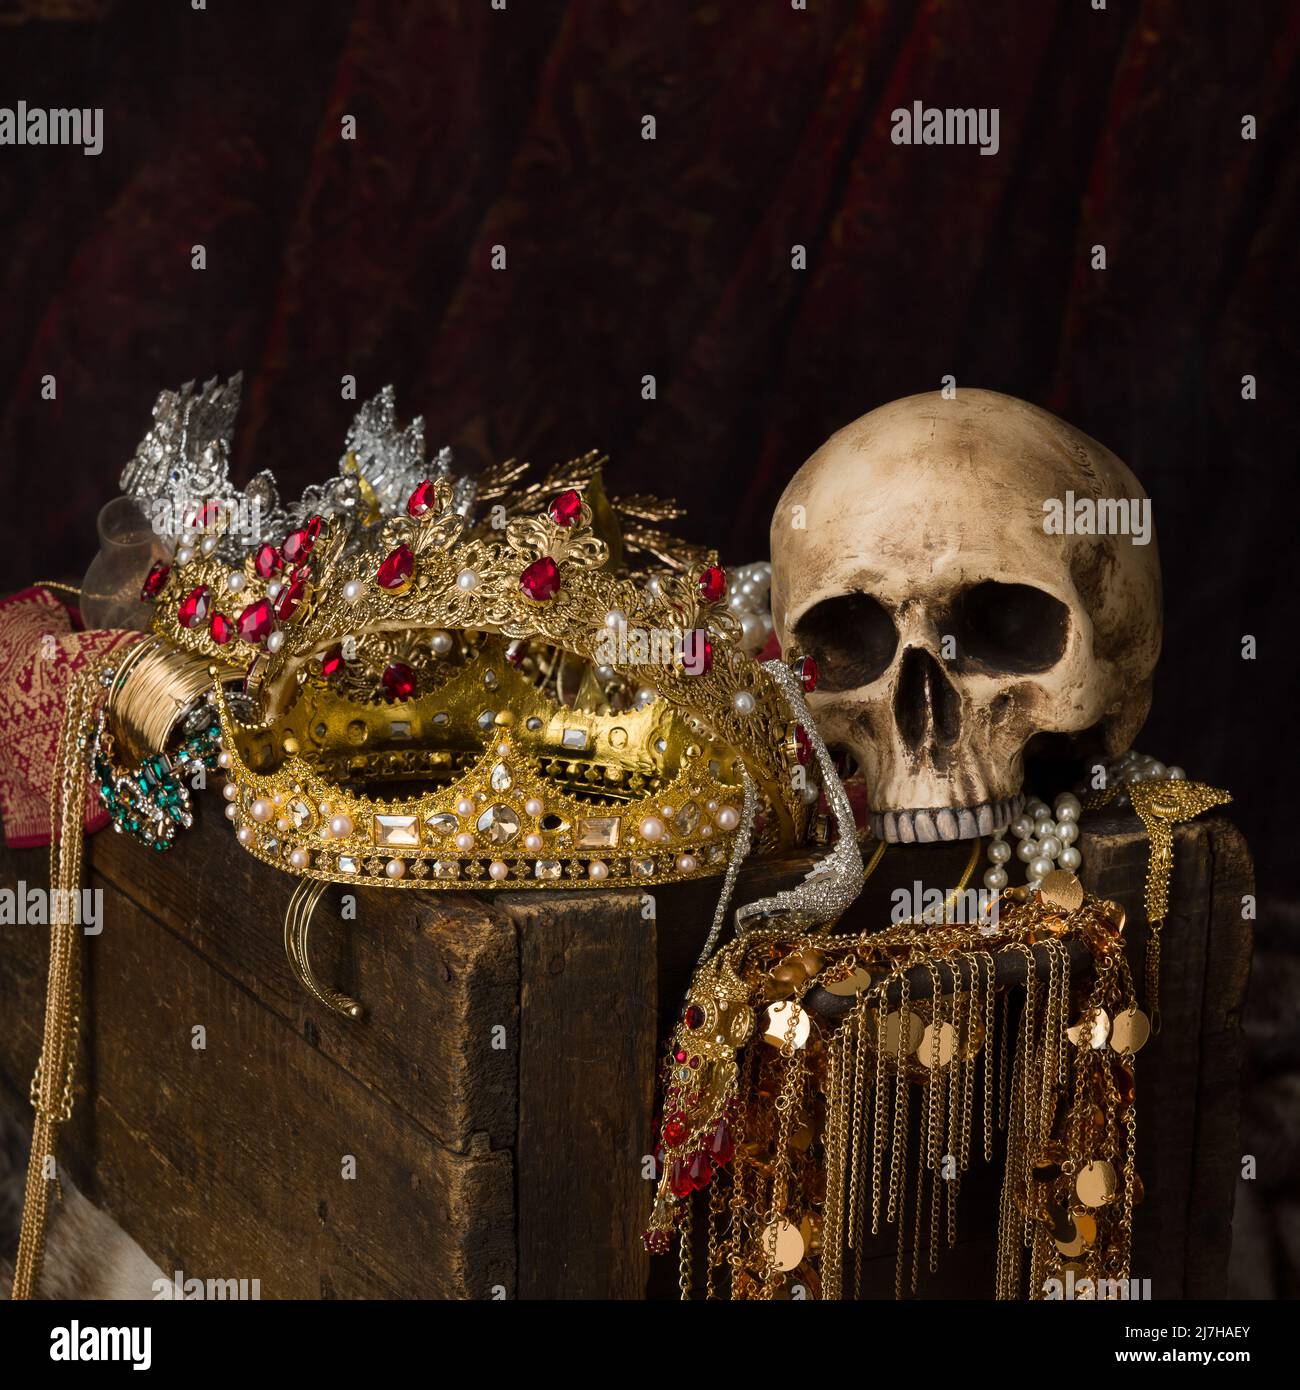 Immagine romantica di un tesoro pieno di gioielli, gemme preziose e corone dorate del re Foto Stock